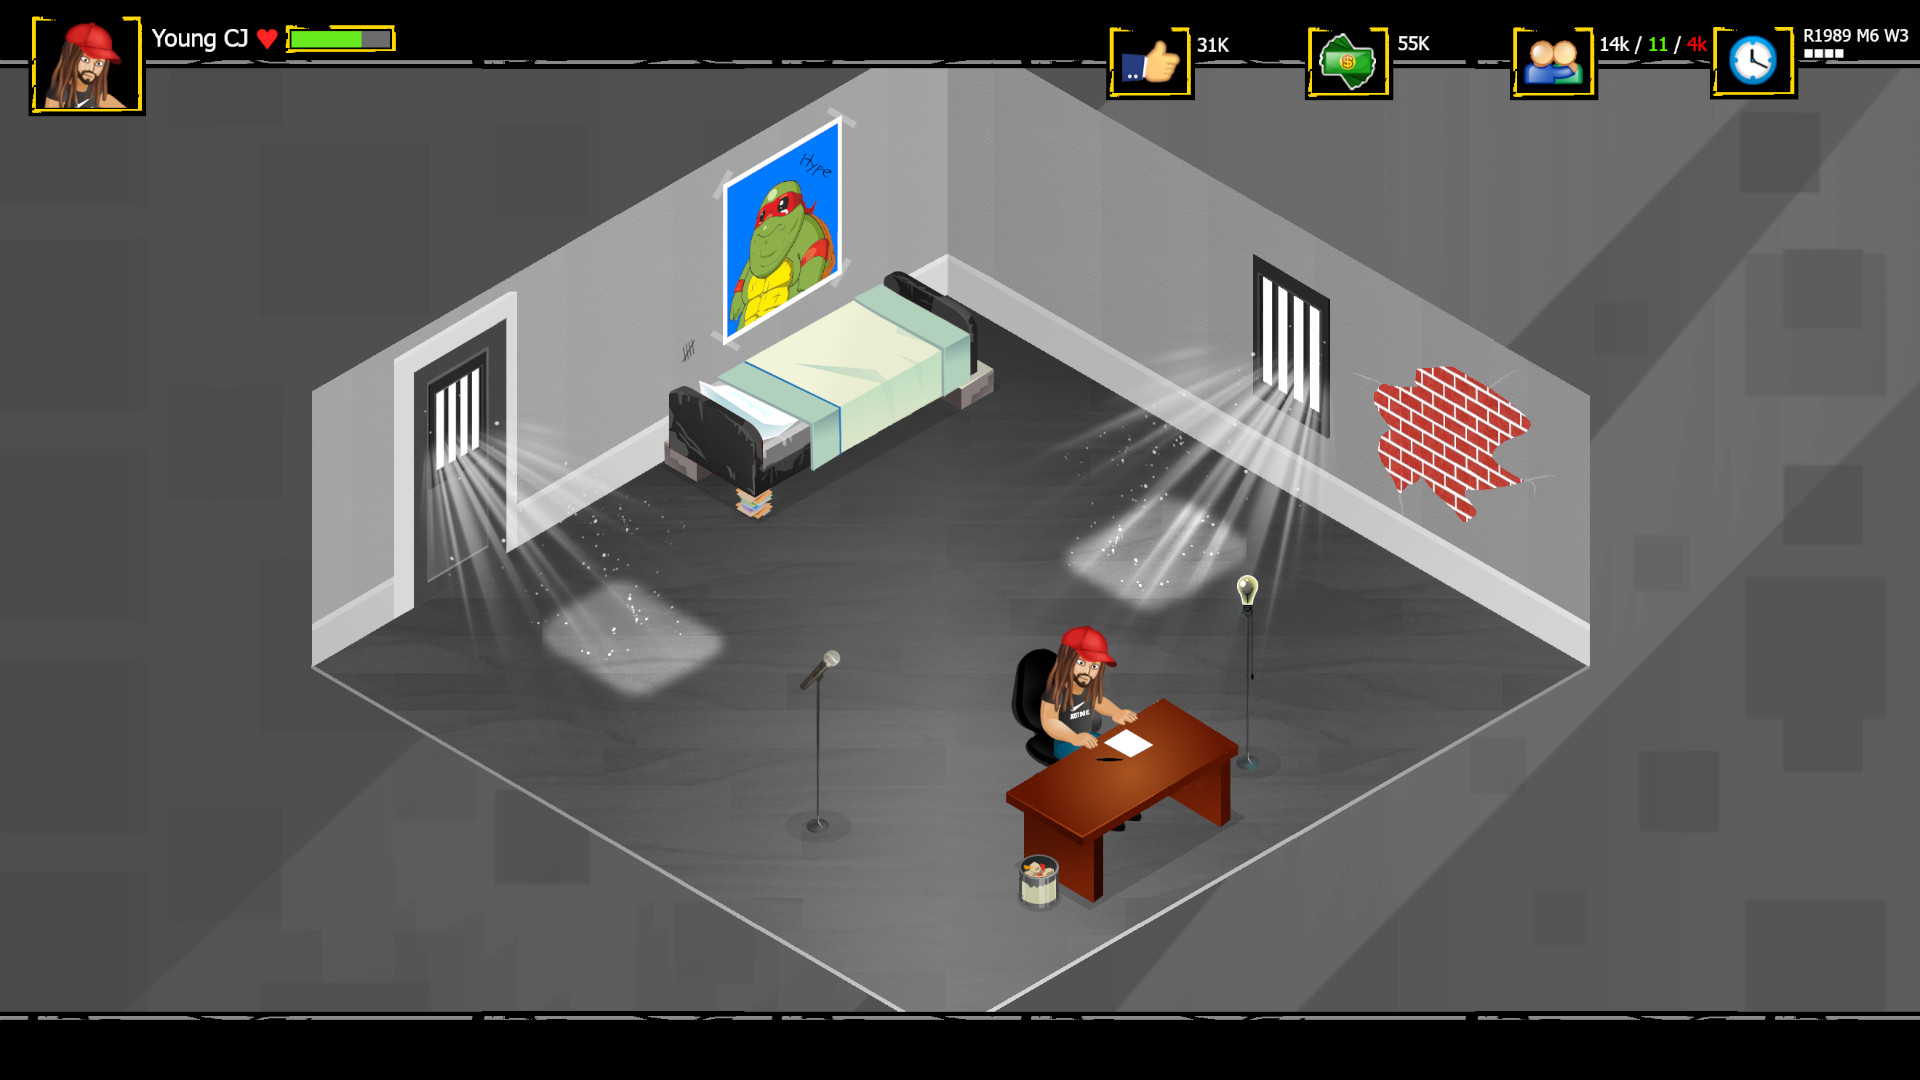 Rap simulator screenshot